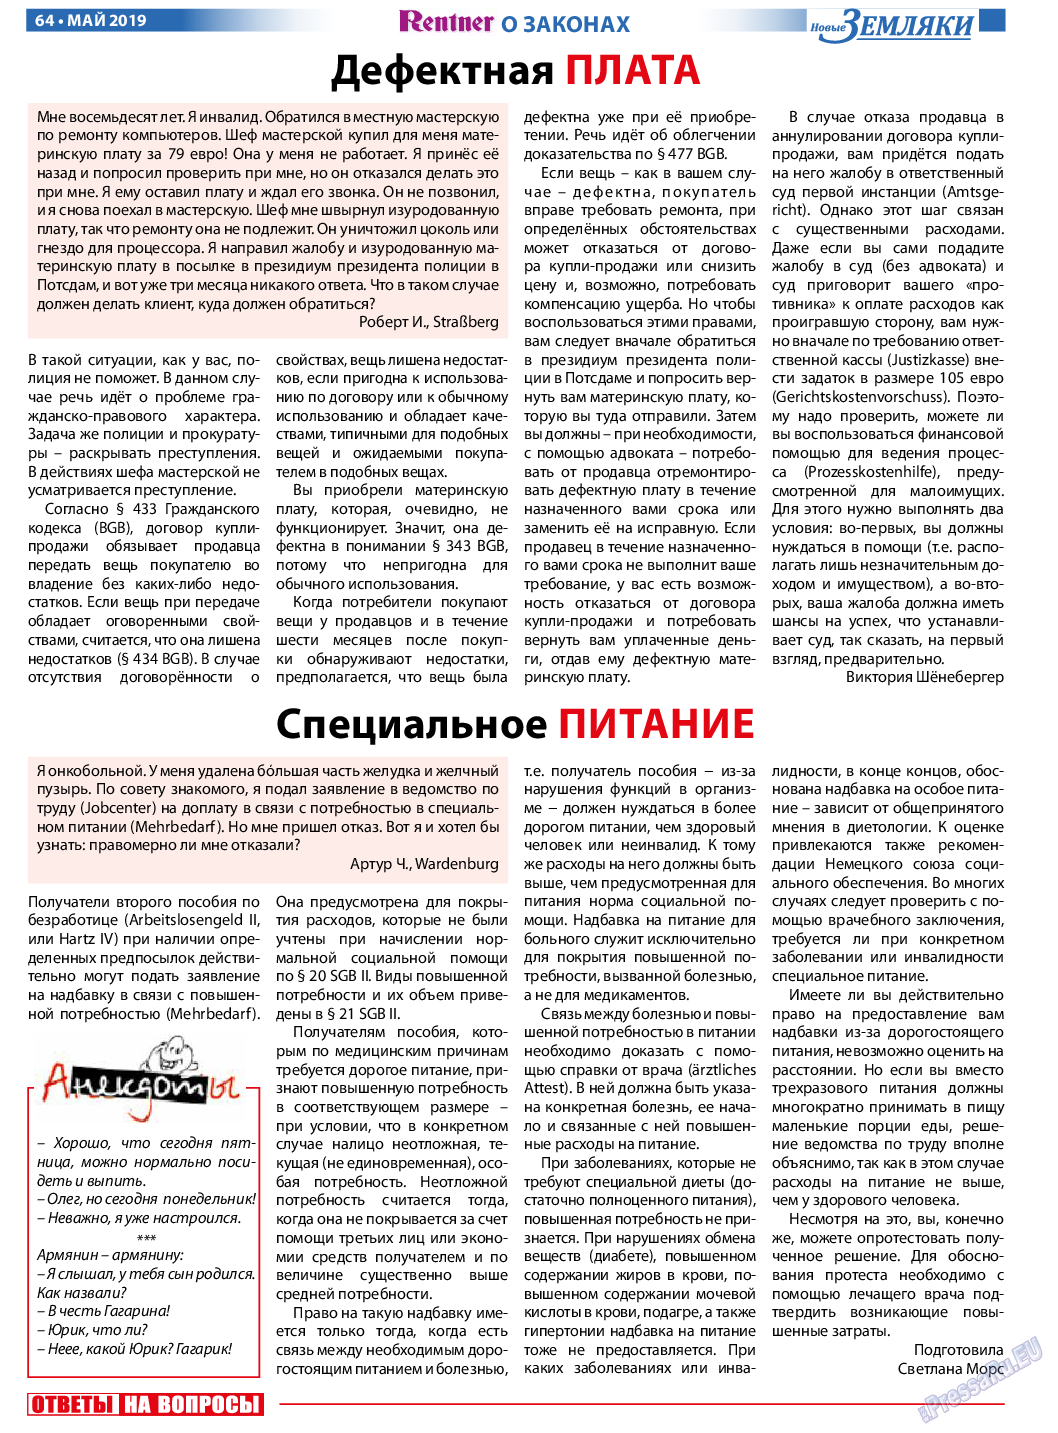 Новые Земляки, газета. 2019 №5 стр.64